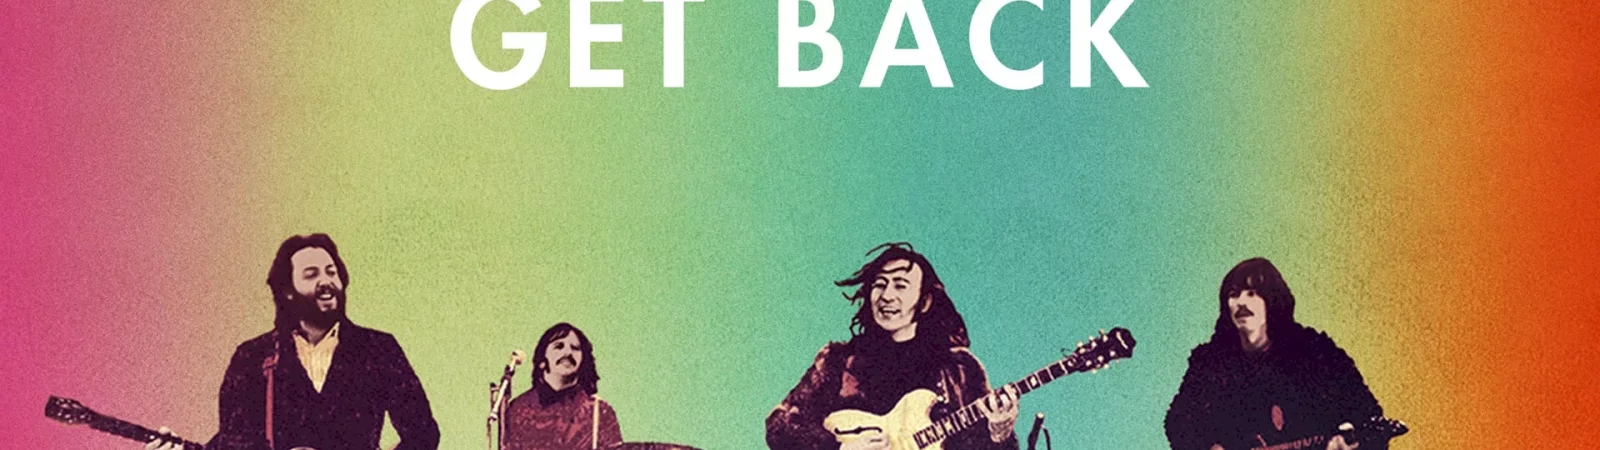 Photo du film : The Beatles: Get Back